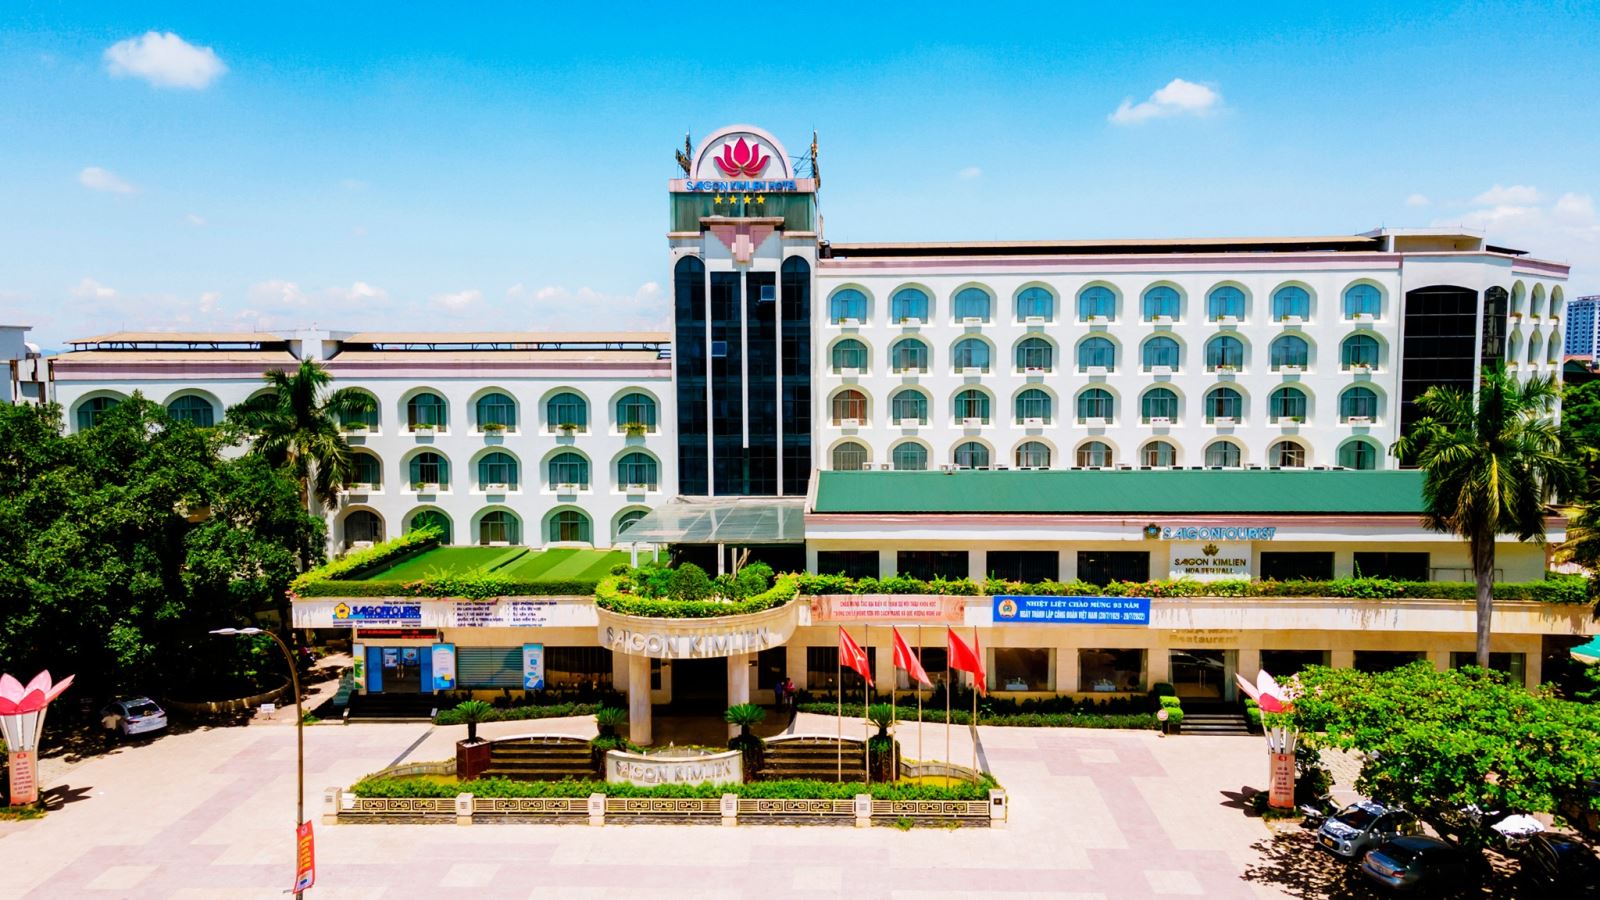 Chào mừng đến với khách sạn Sài Gòn Kim Liên